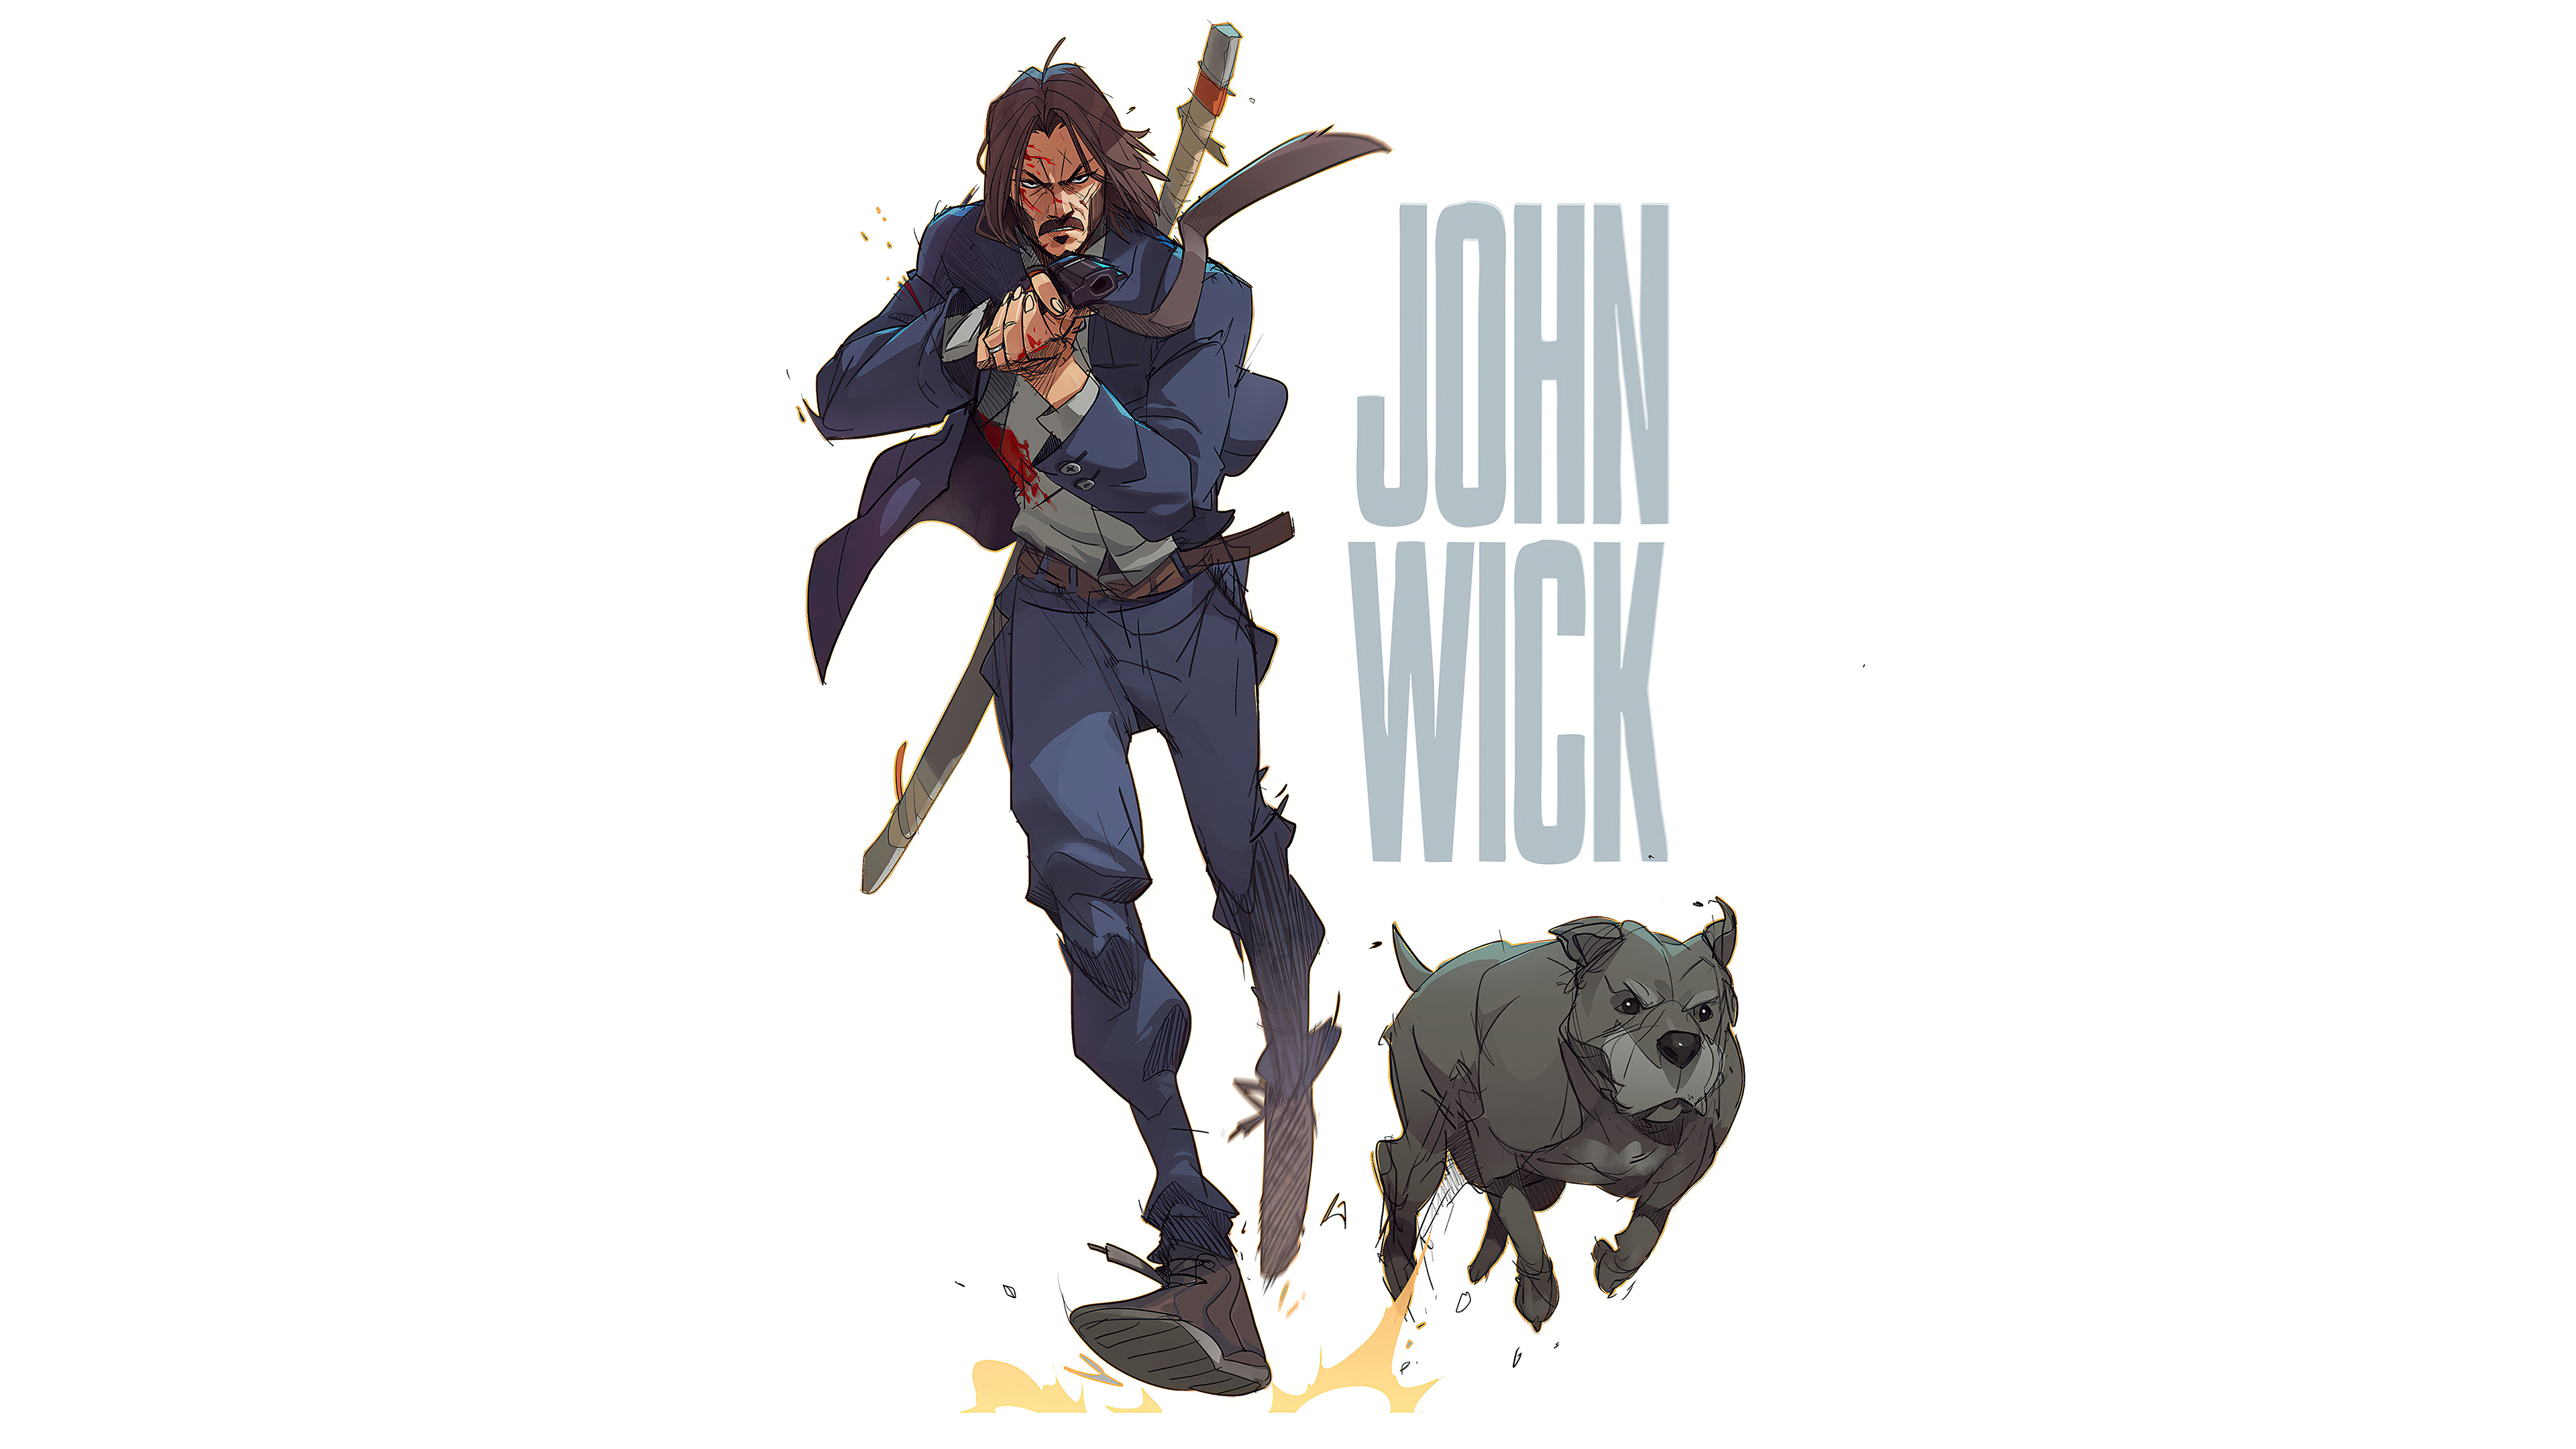 Pin on John wick